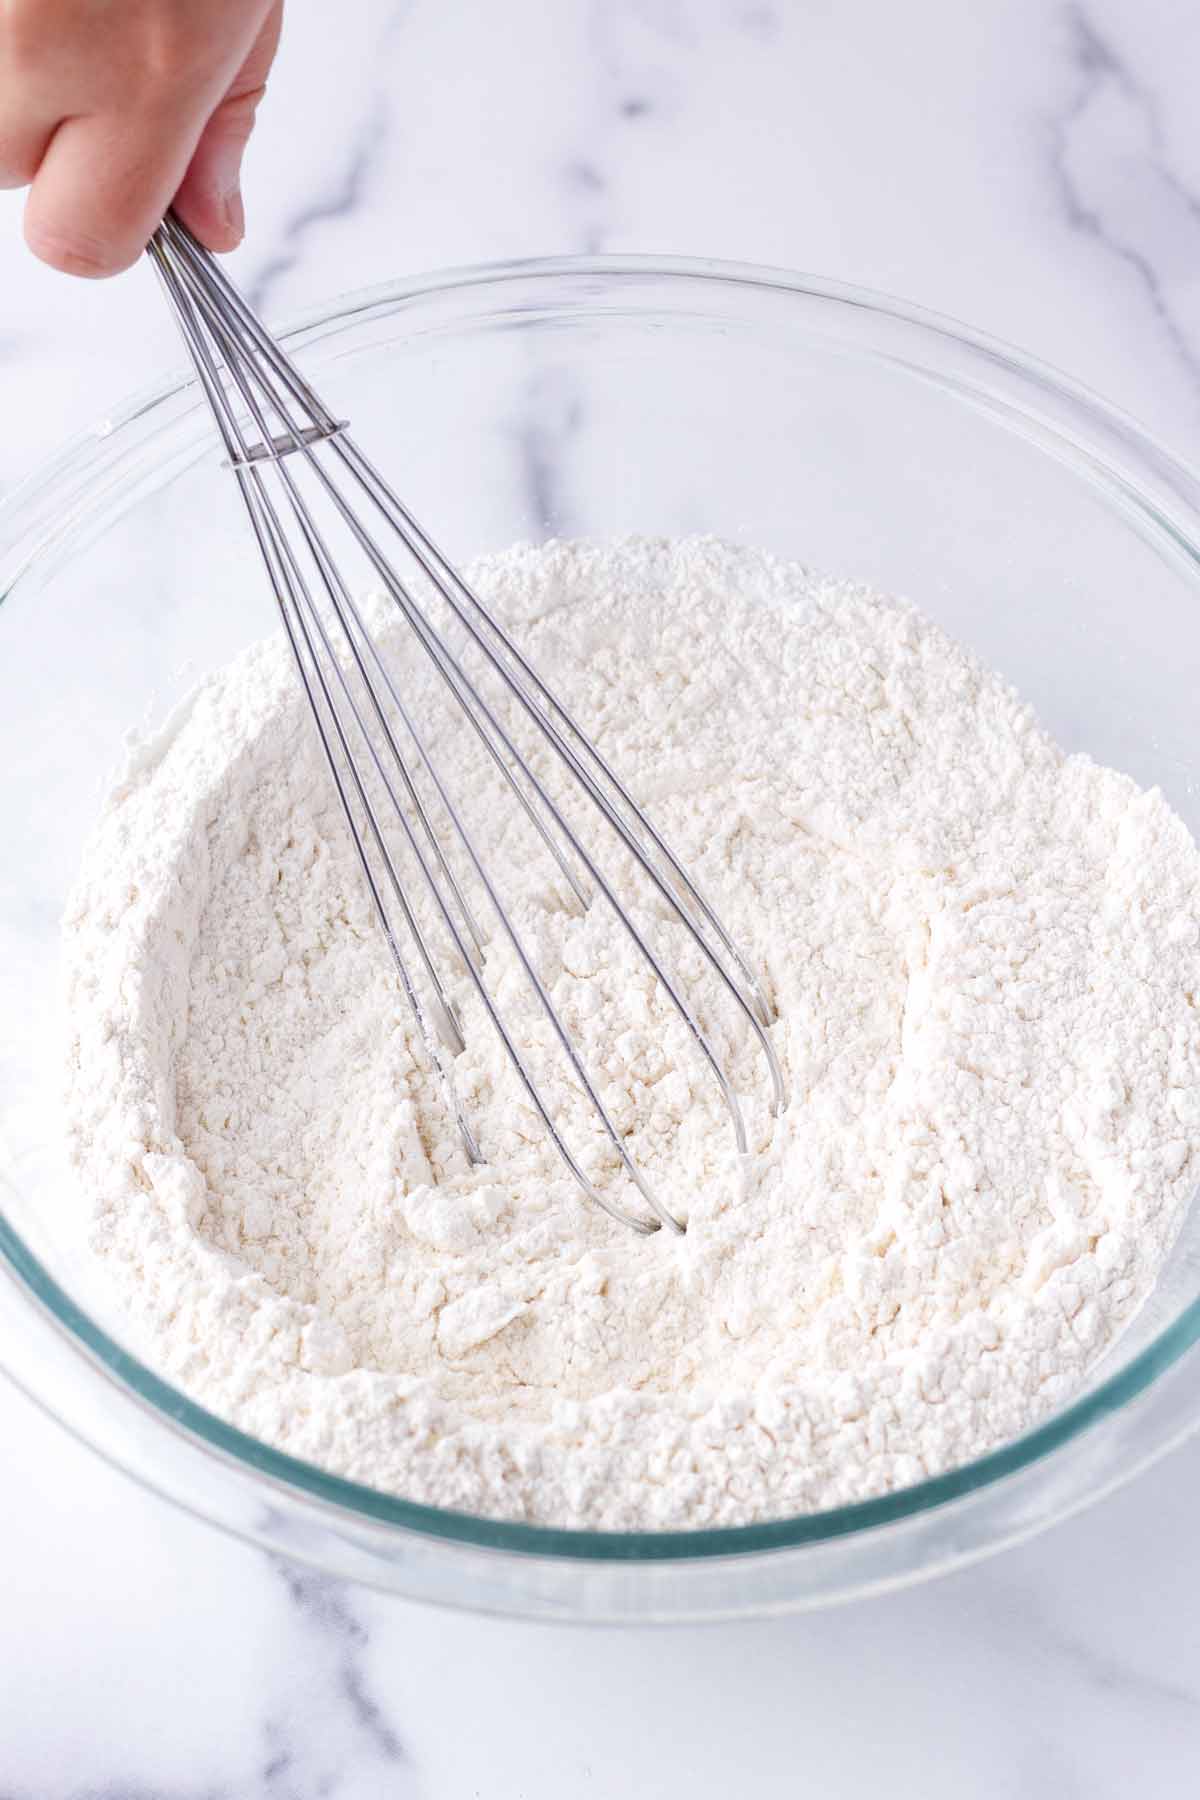 whisking flour, salt, and baking powder